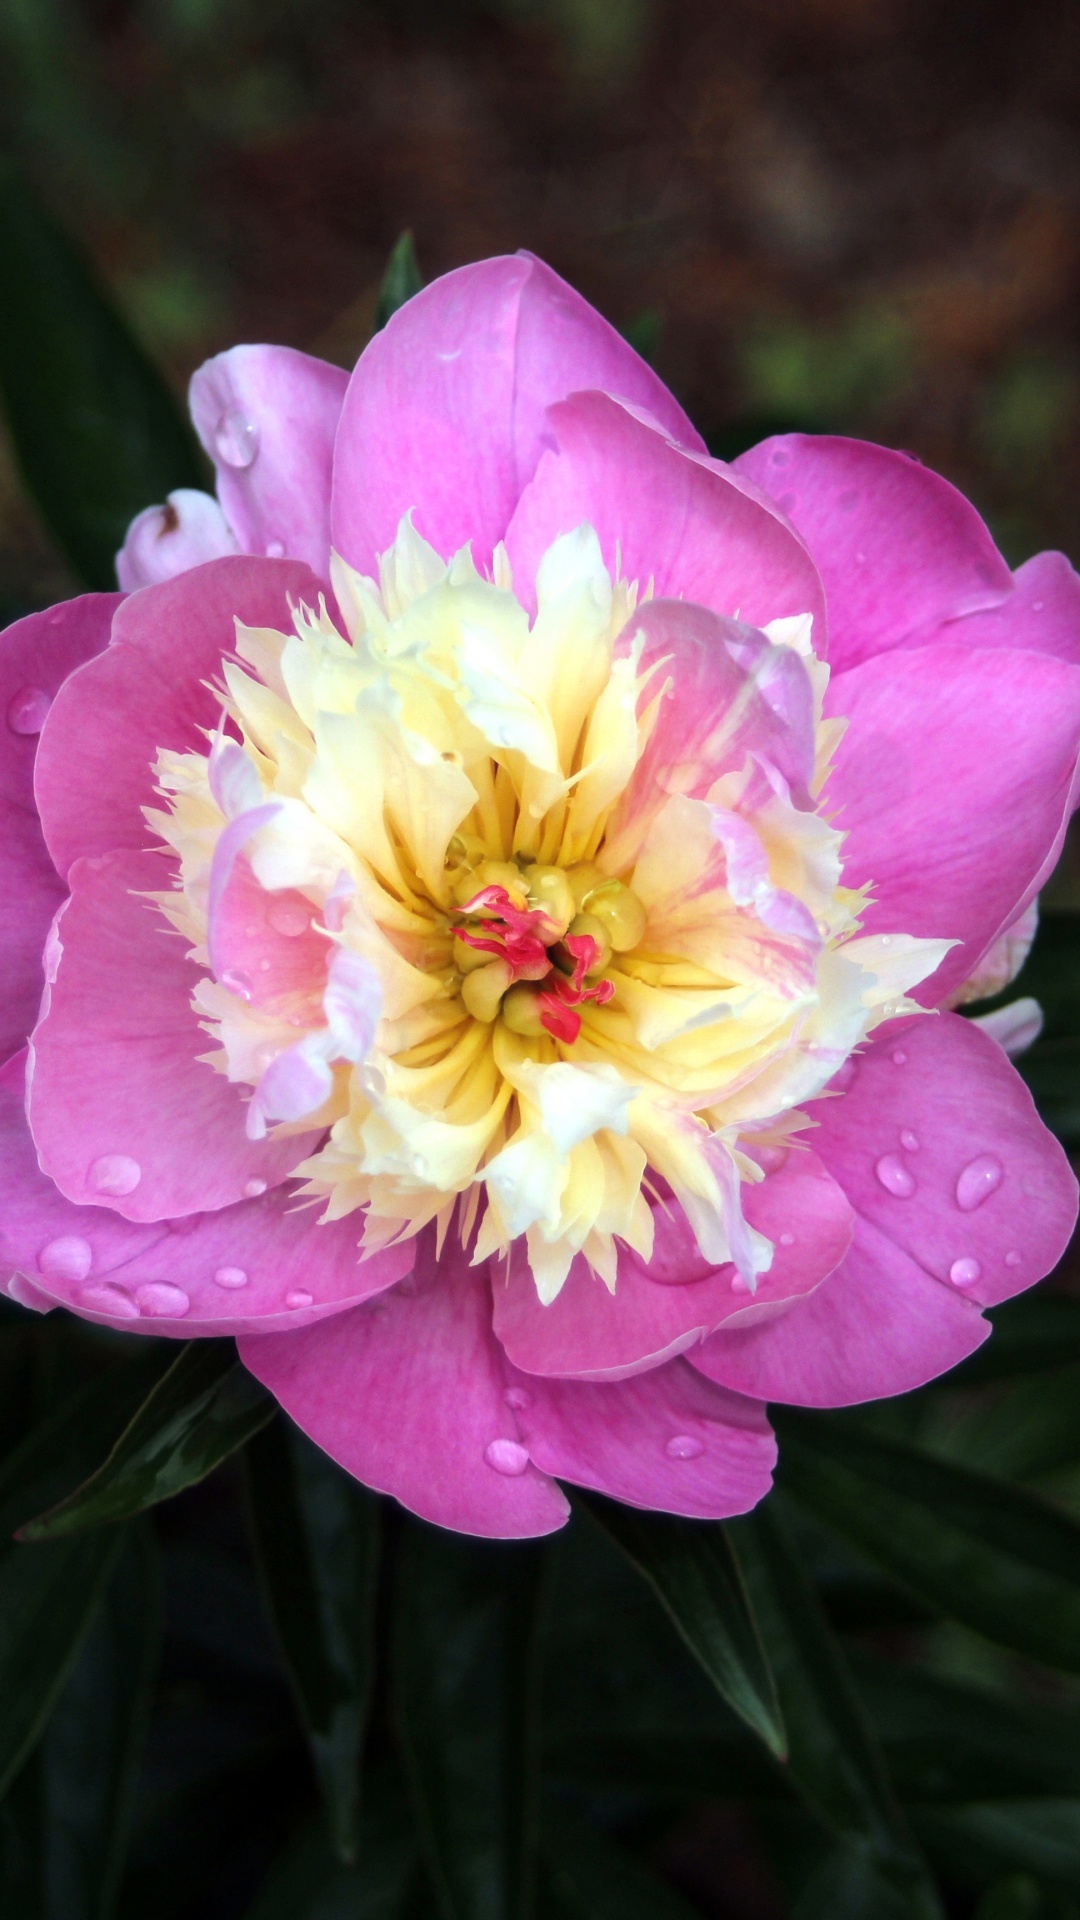 Pink Flower in Tilt Shift Lens. Wallpaper in 1080x1920 Resolution